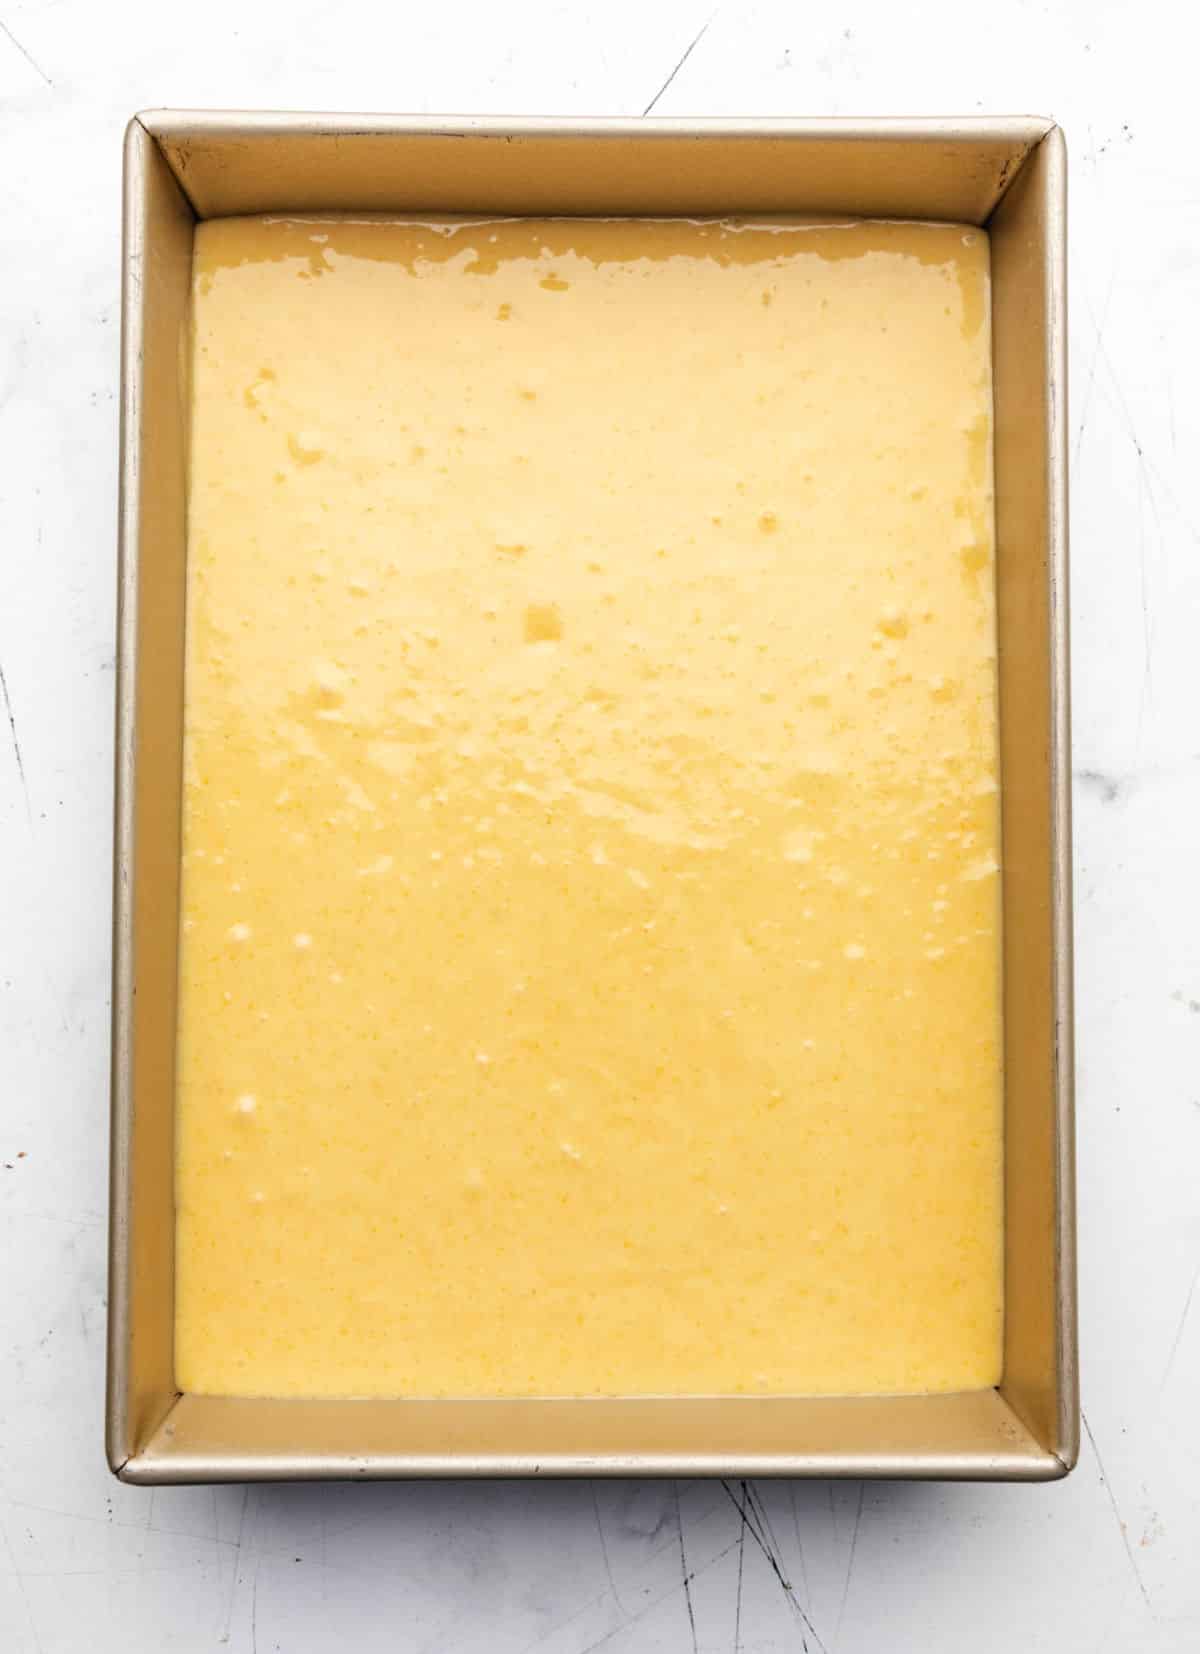 Sweet cornbread batter in a gold baking pan.